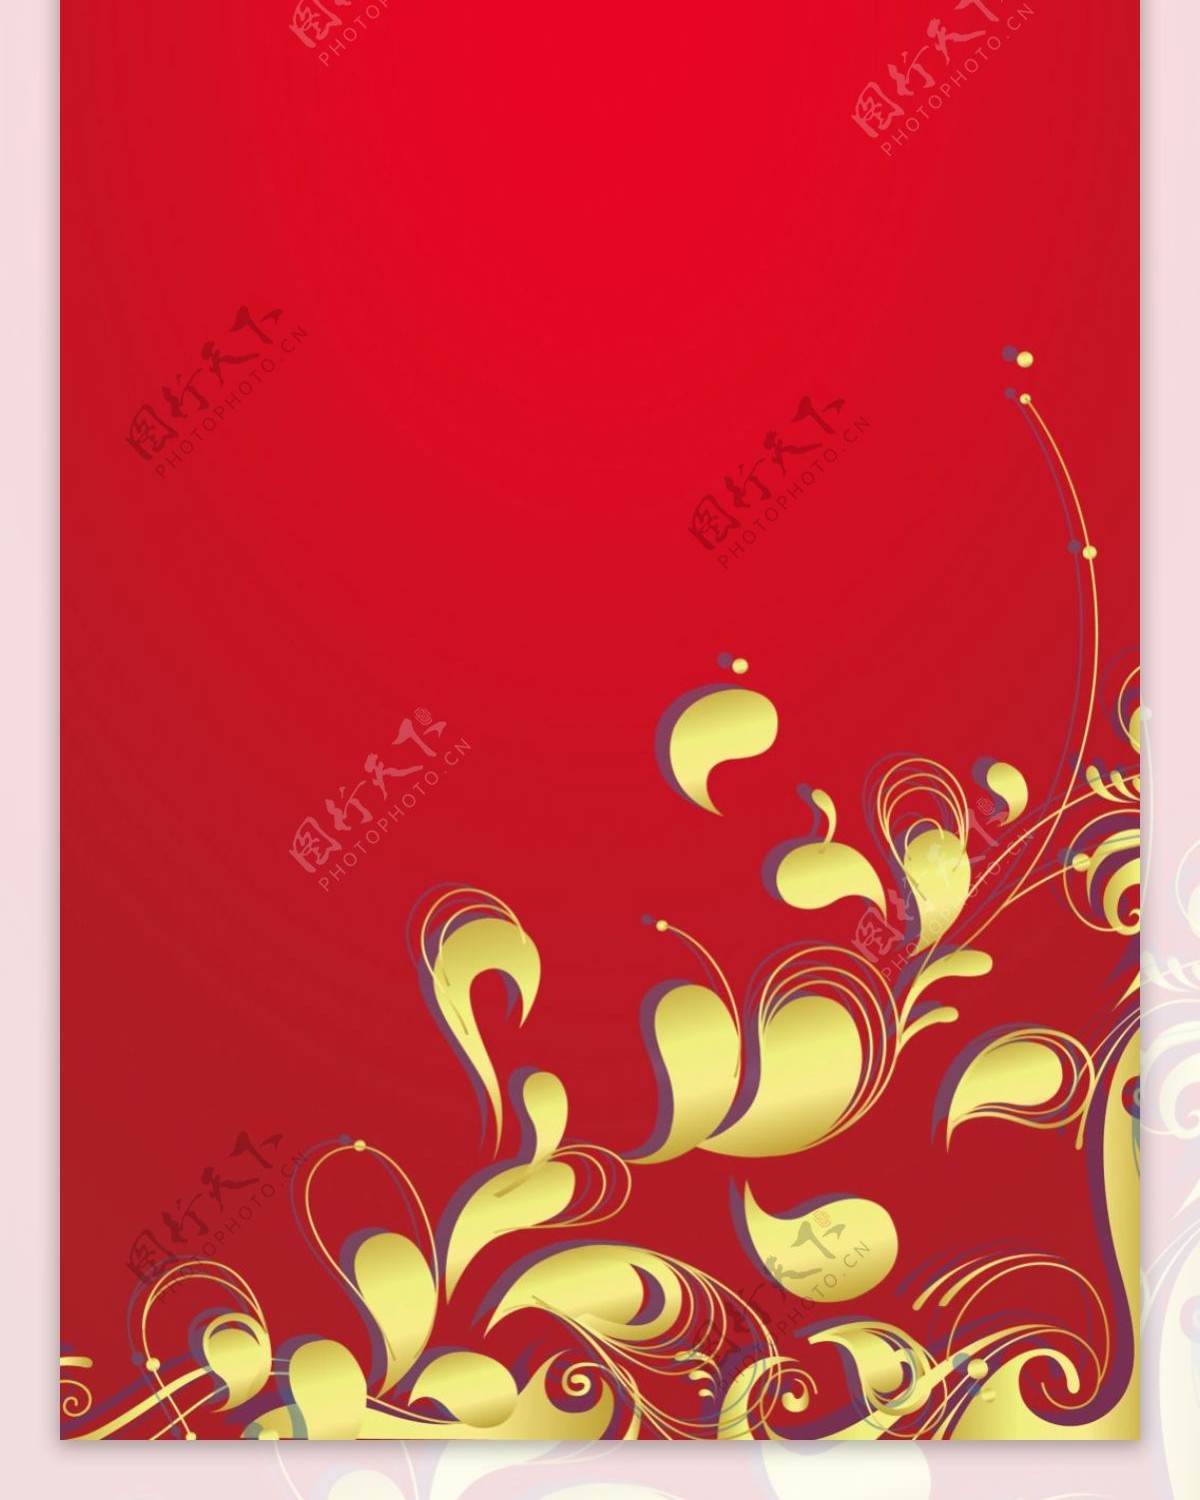 红色精美花纹展架设计模板海报画面